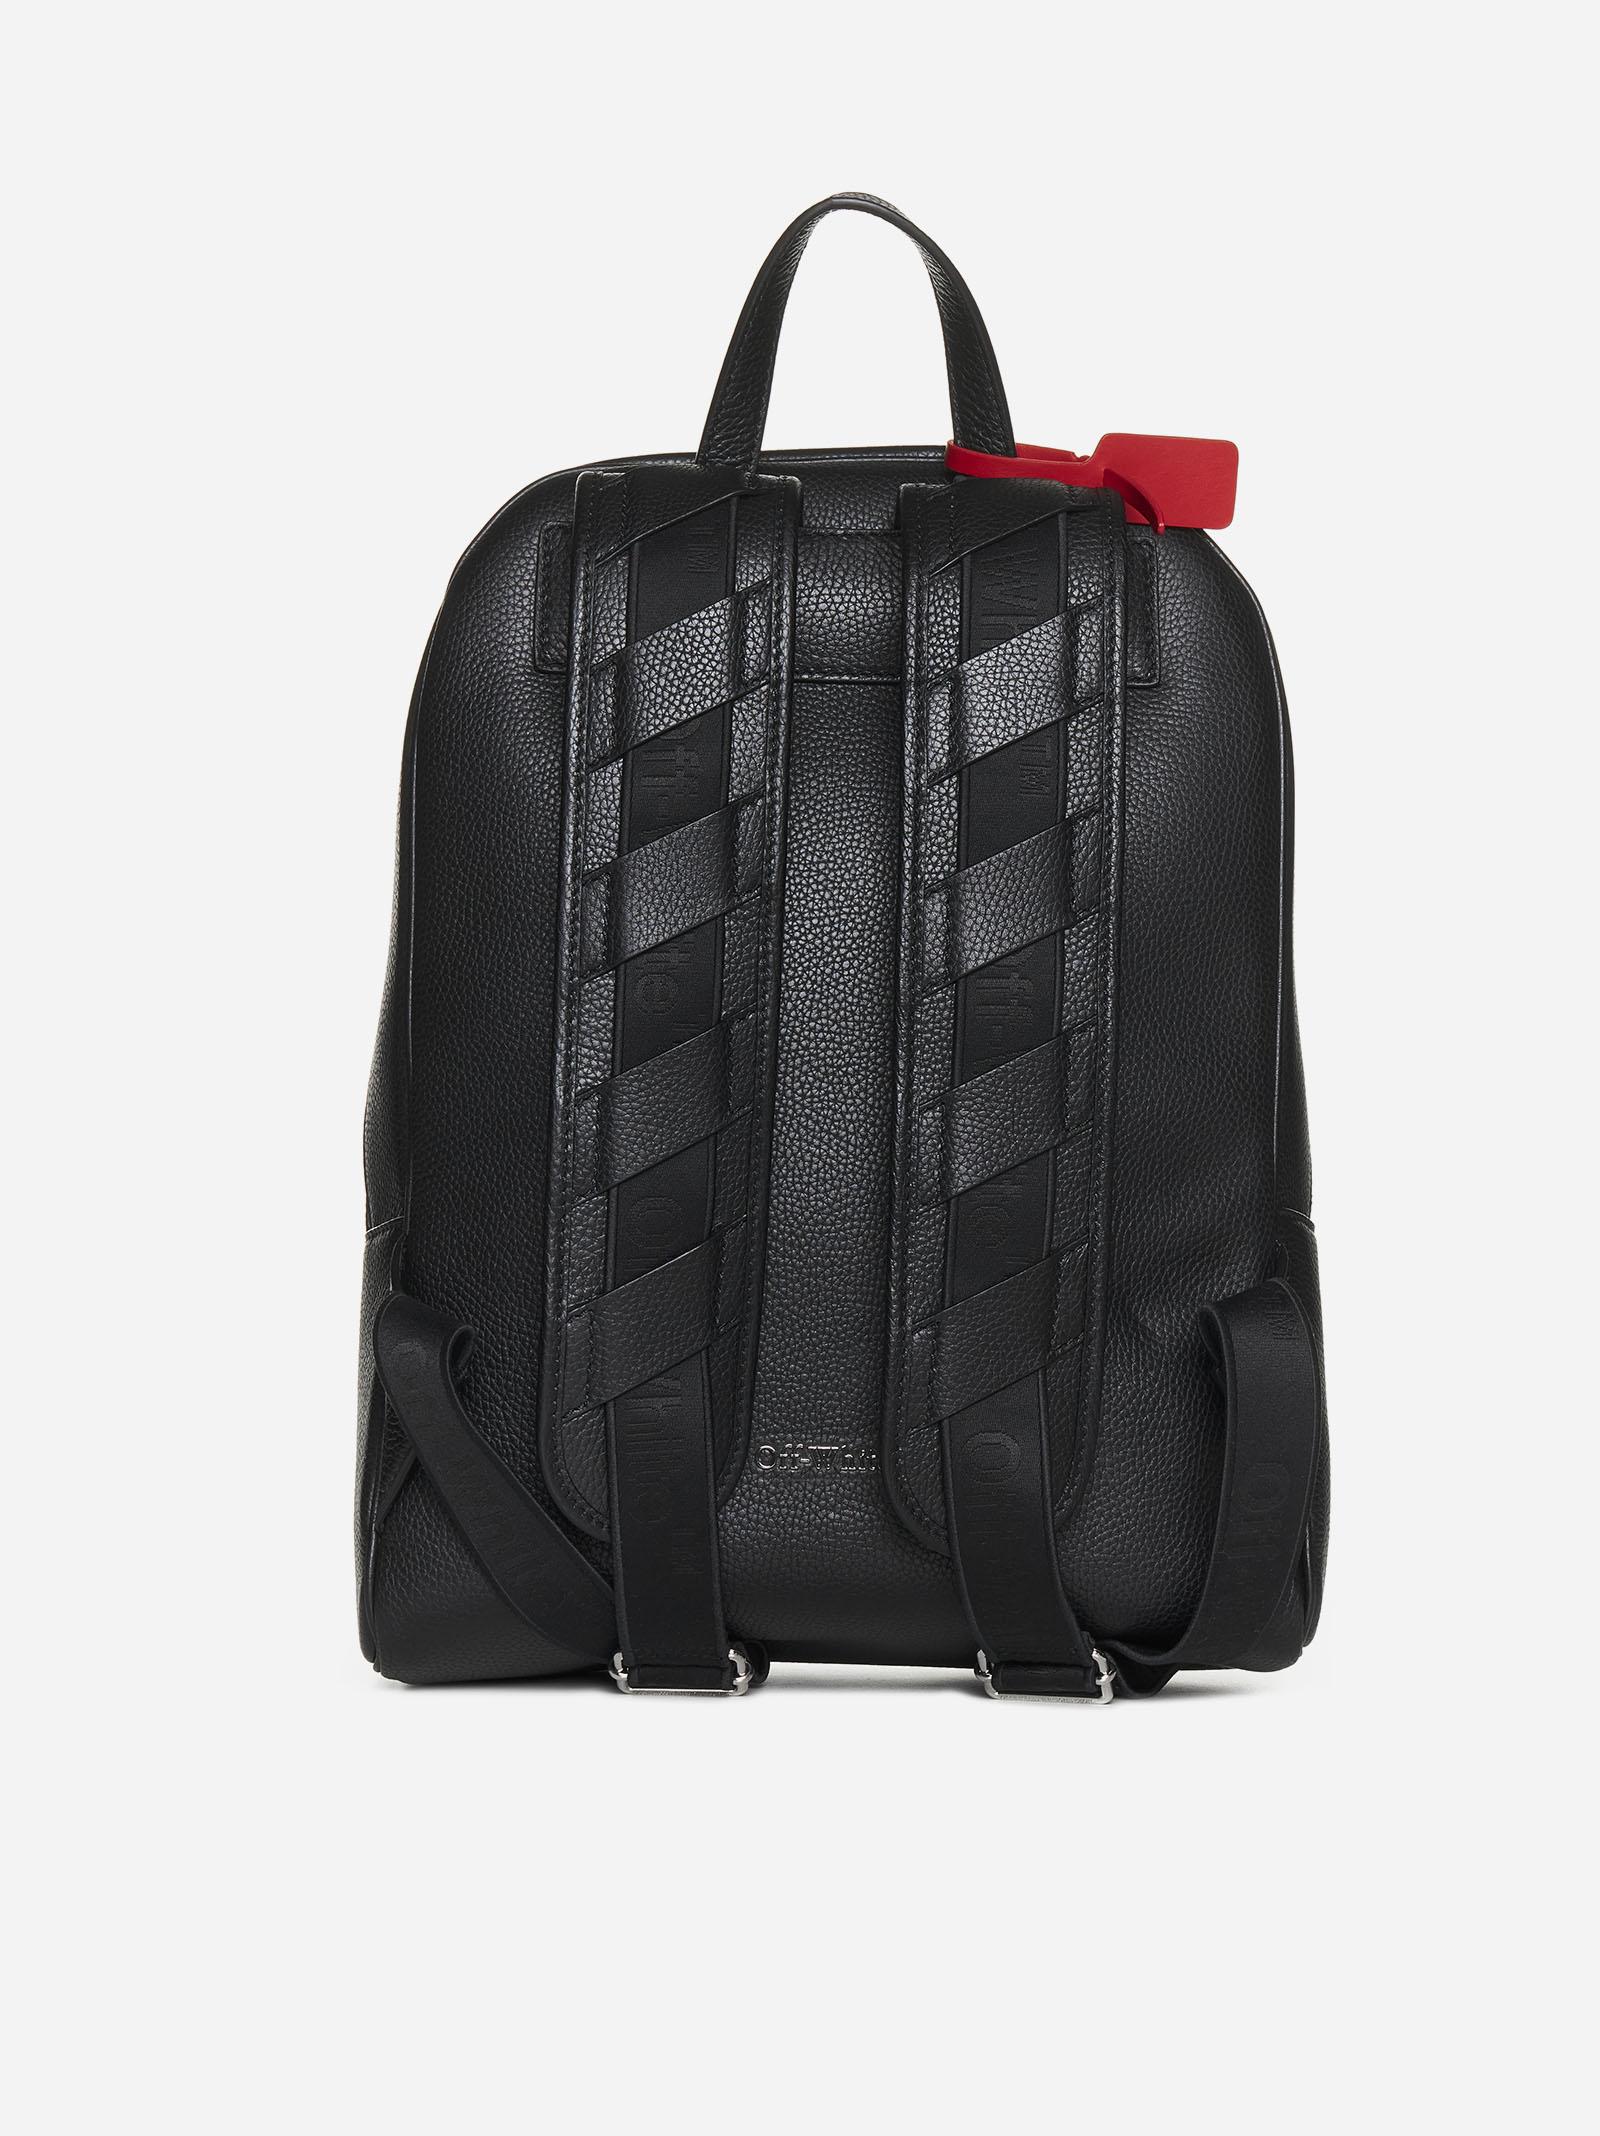 Off-White c/o Virgil Abloh Binder Leather Backpack in Black for Men